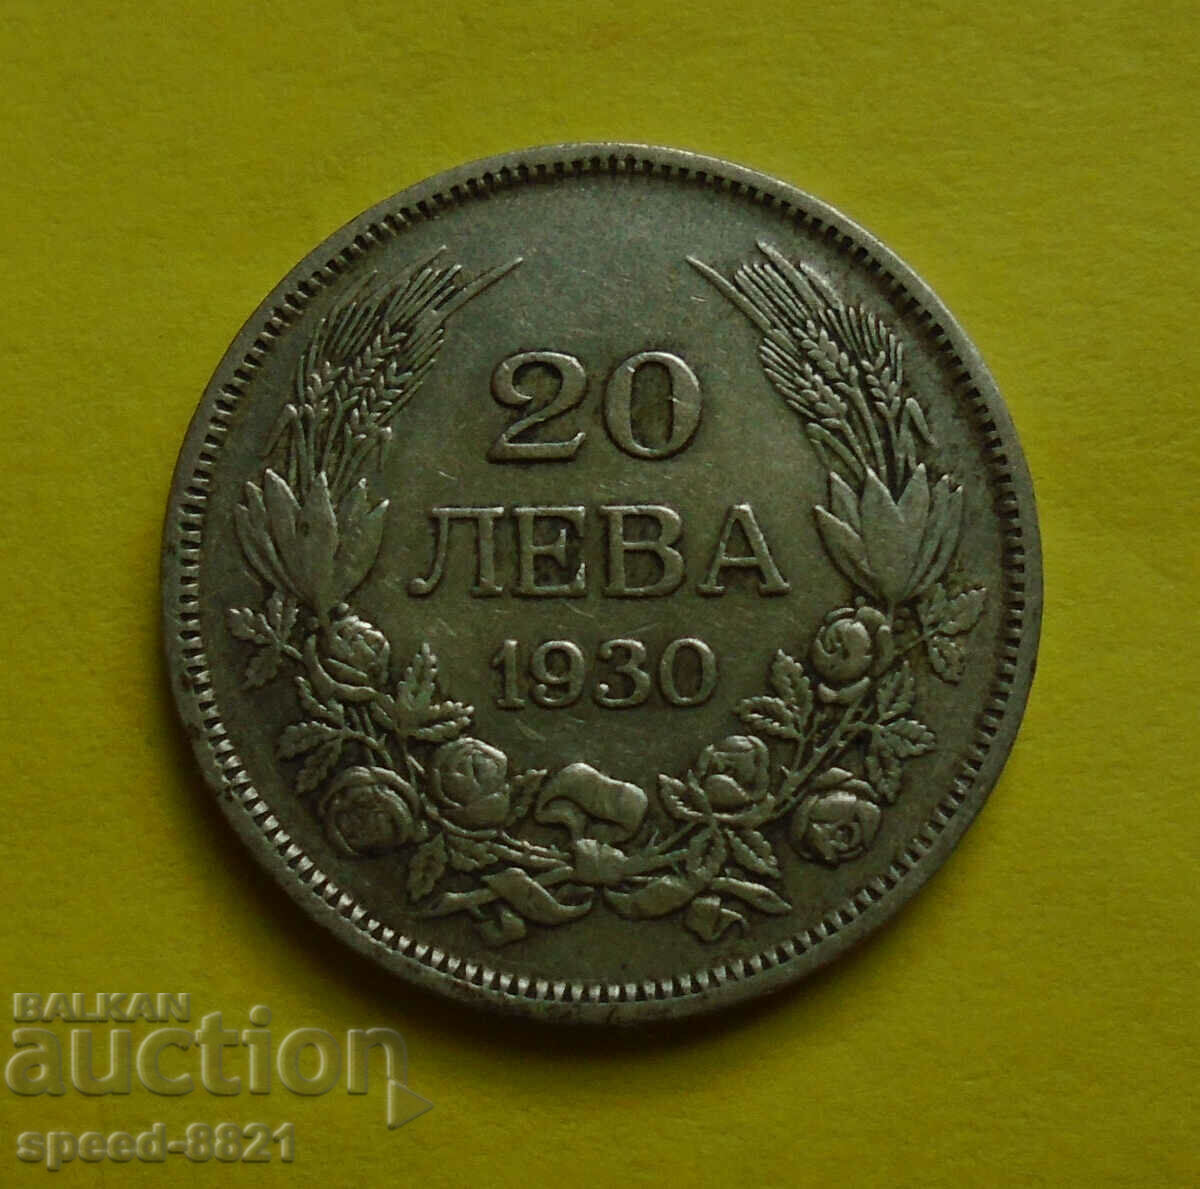 20 leva 1930 coin Bulgaria